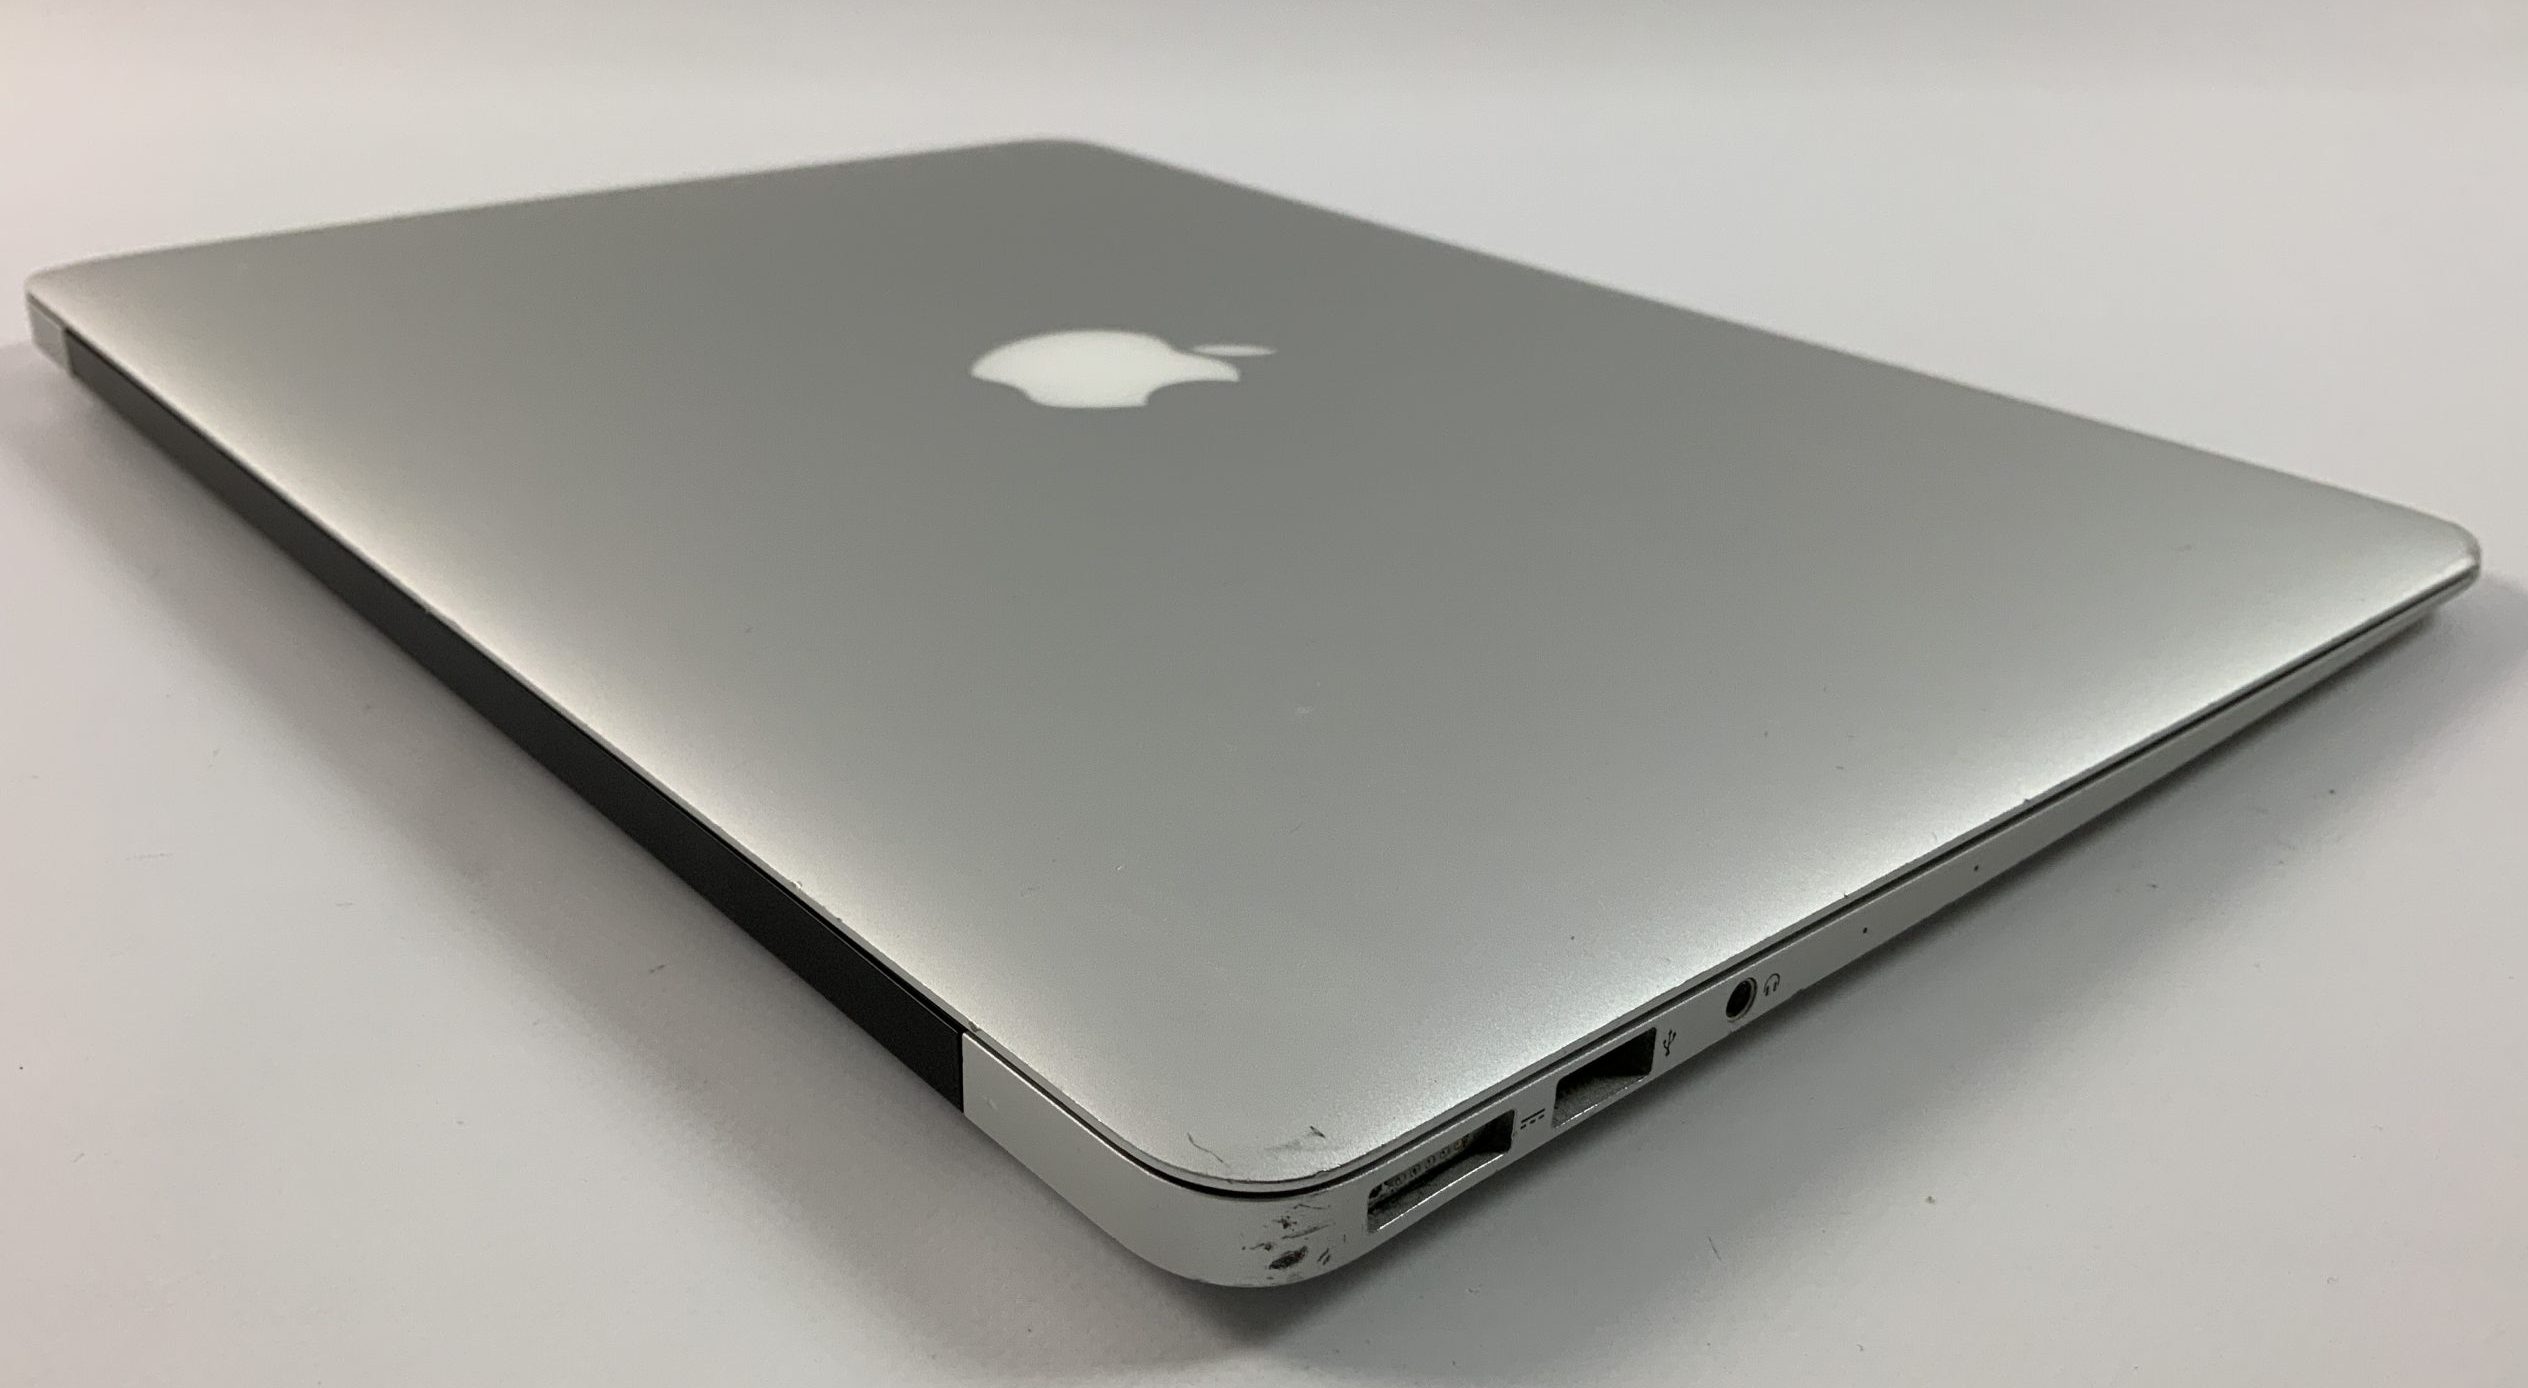 MacBook Air 13" Mid 2017 (Intel Core i5 1.8 GHz 8 GB RAM 256 GB SSD), Intel Core i5 1.8 GHz, 8 GB RAM, 256 GB SSD, Bild 3